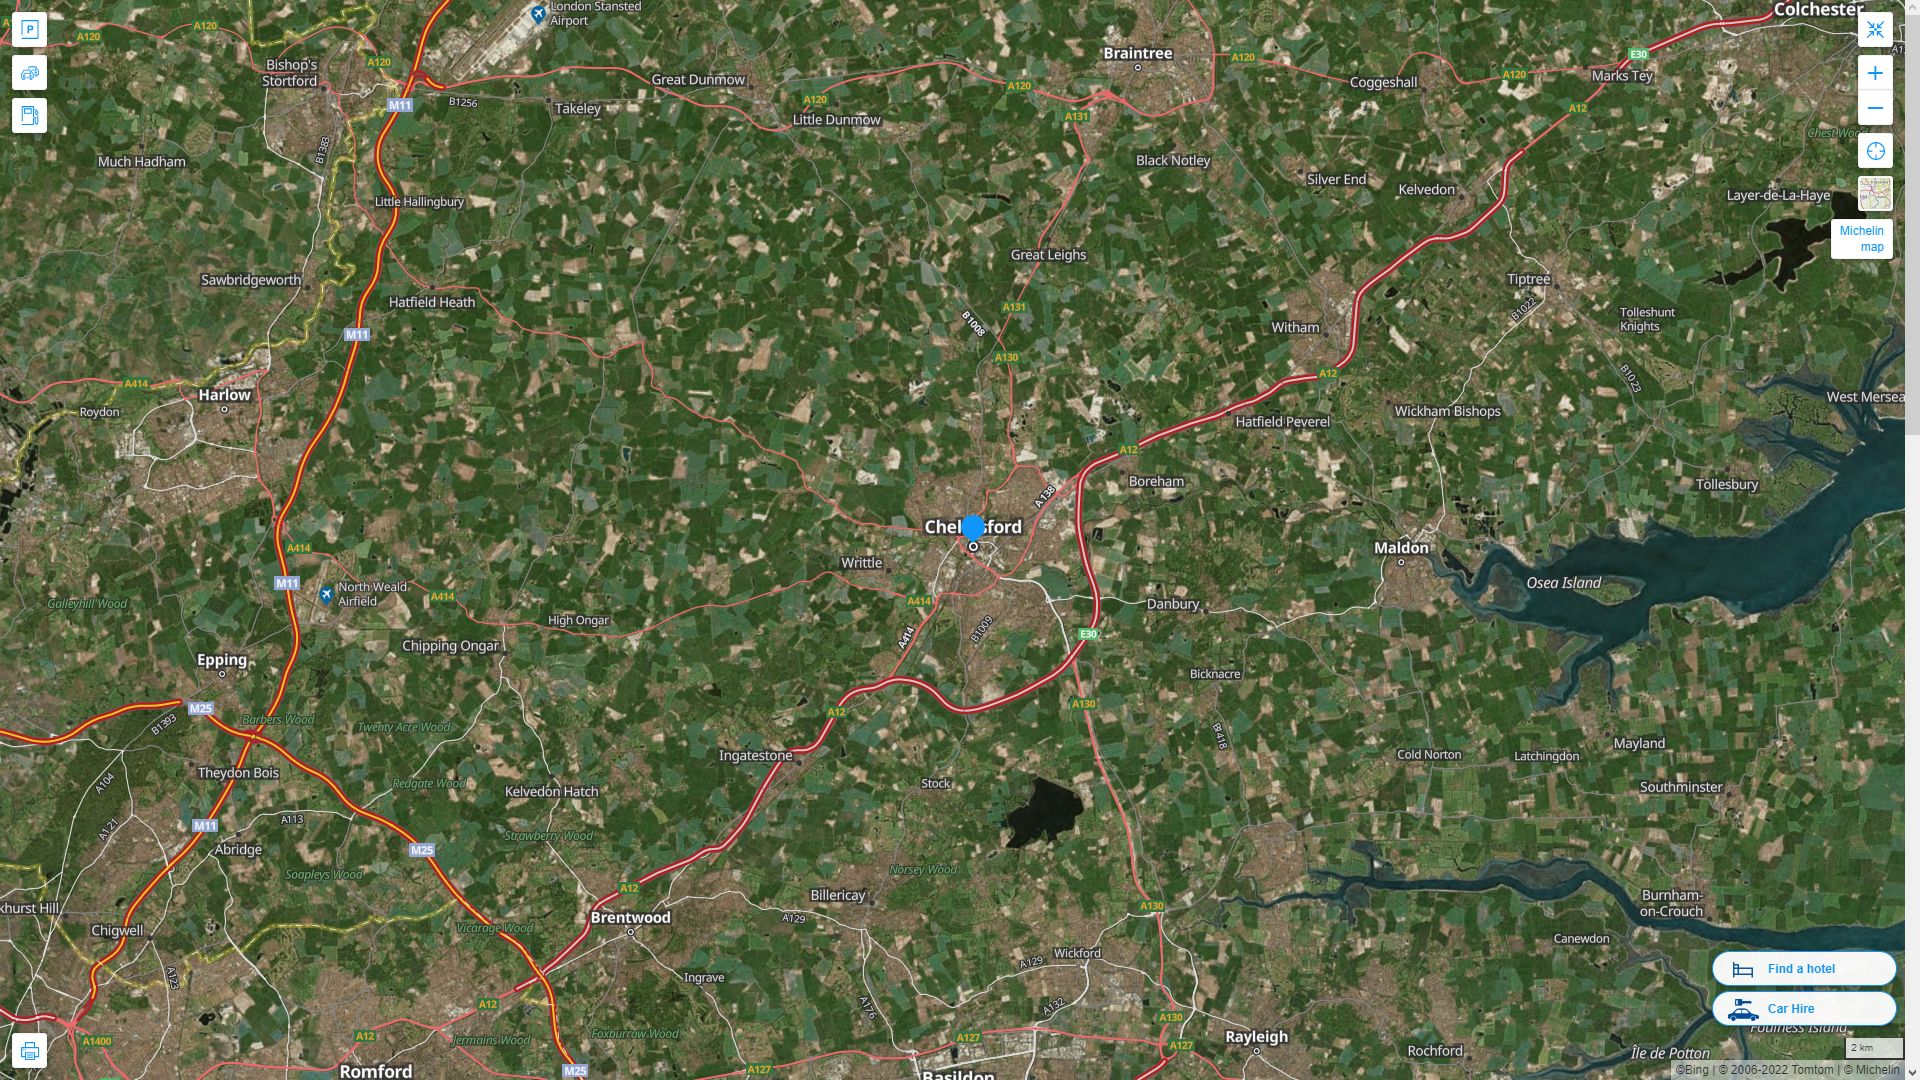 Chelmsford Royaume Uni Autoroute et carte routiere avec vue satellite